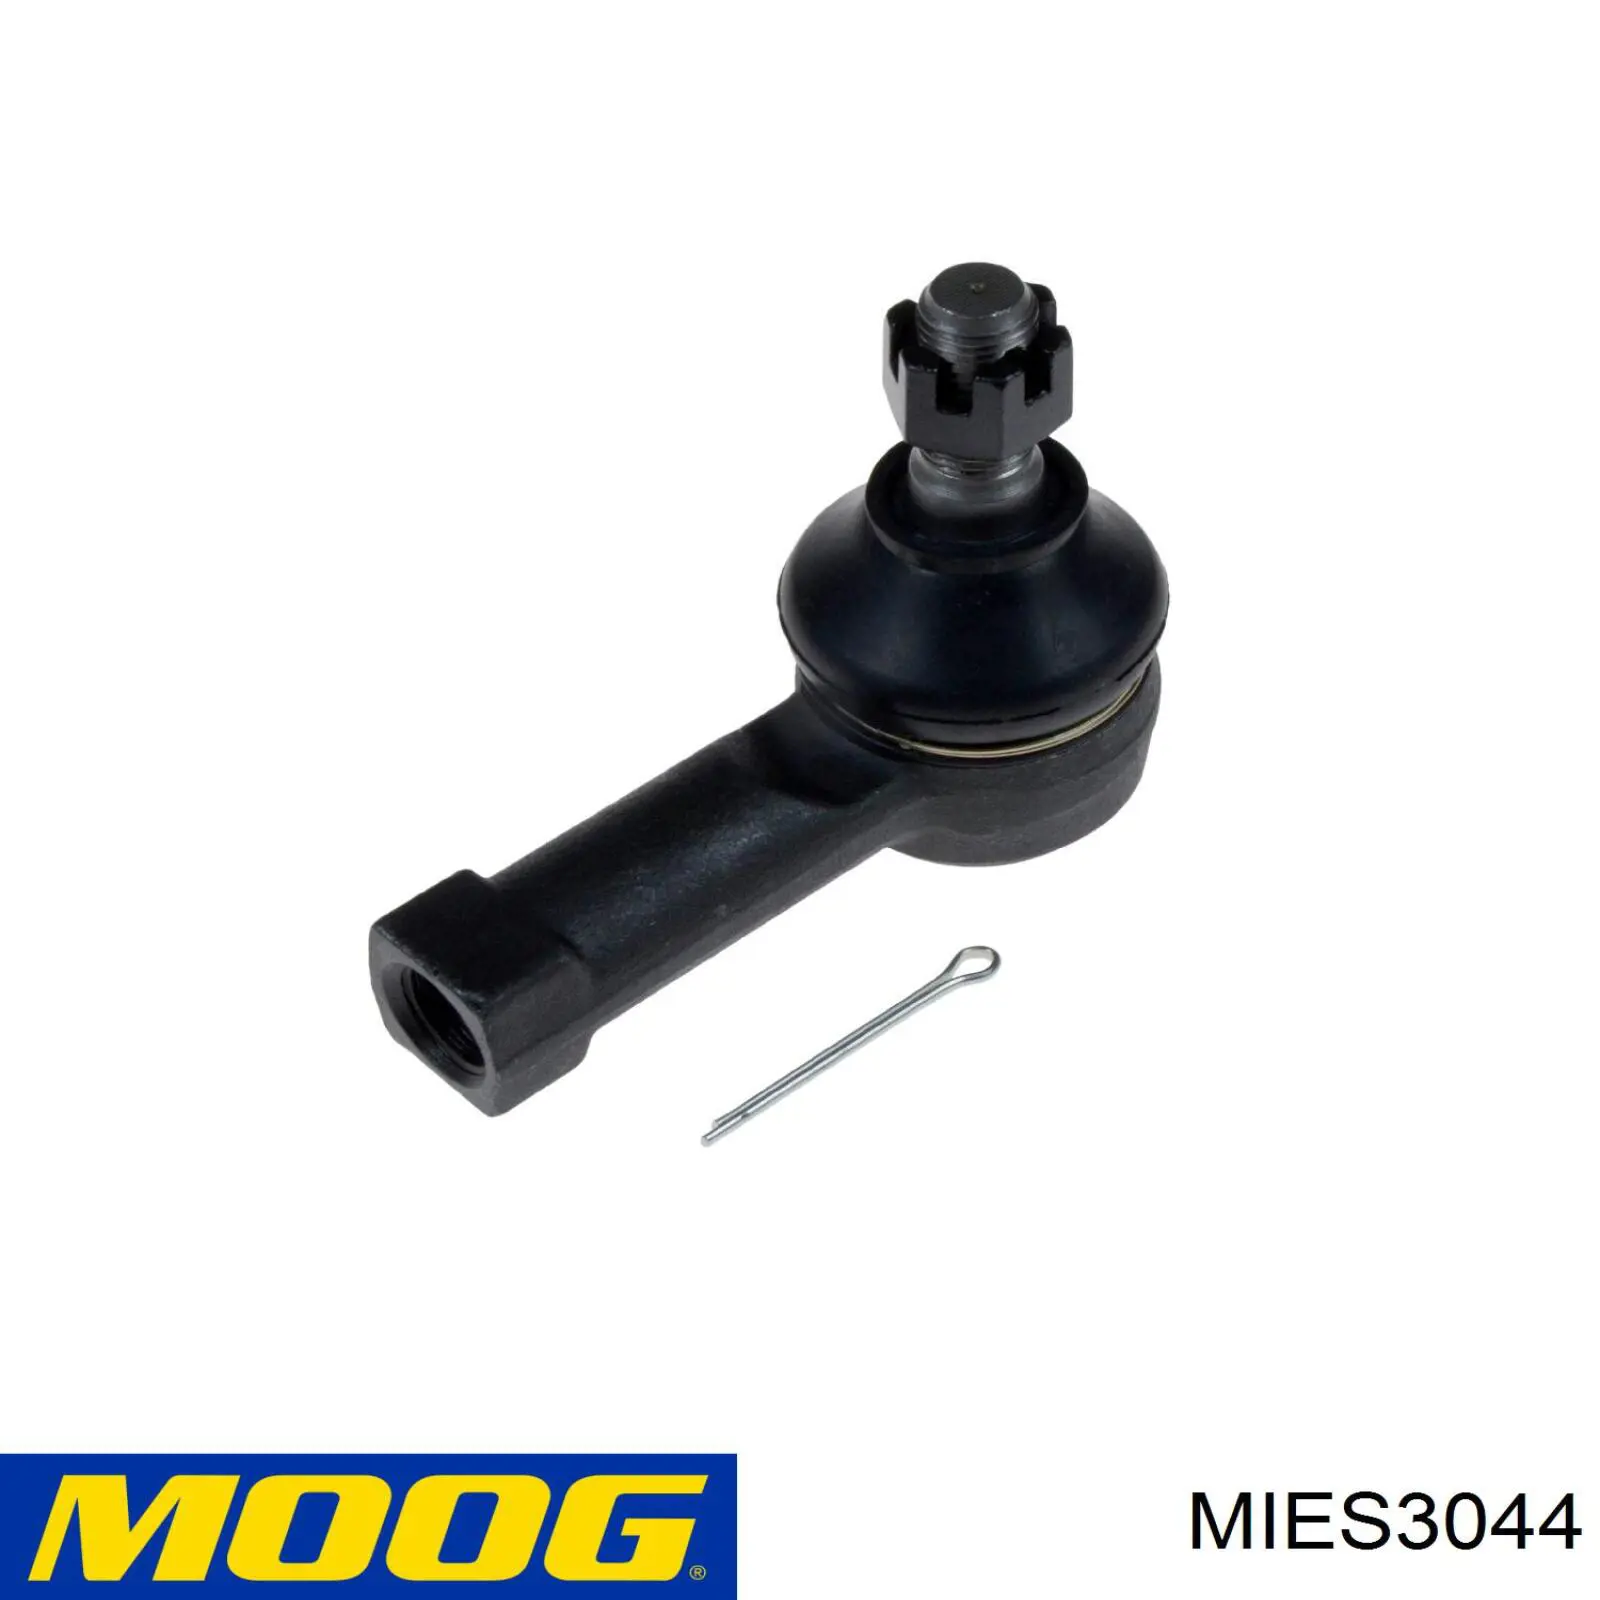 MIES3044 Moog rótula barra de acoplamiento exterior